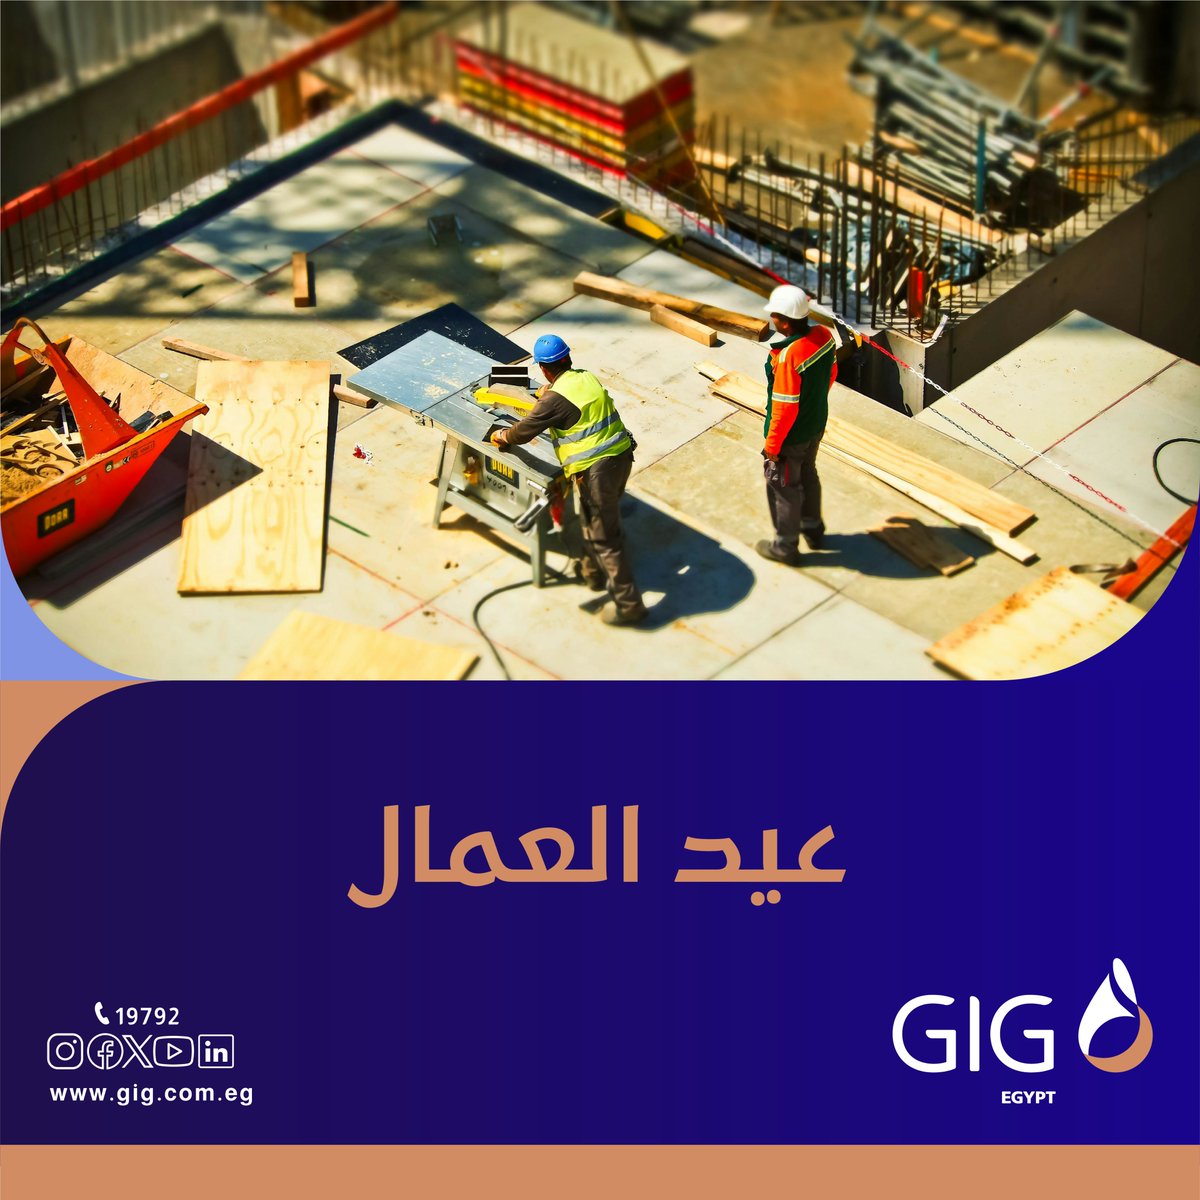 كل عام وأنتم بخير بمناسبة عيد العمال
Happy Labor Day

#laborday
#GIG_Egypt
#investedinyou